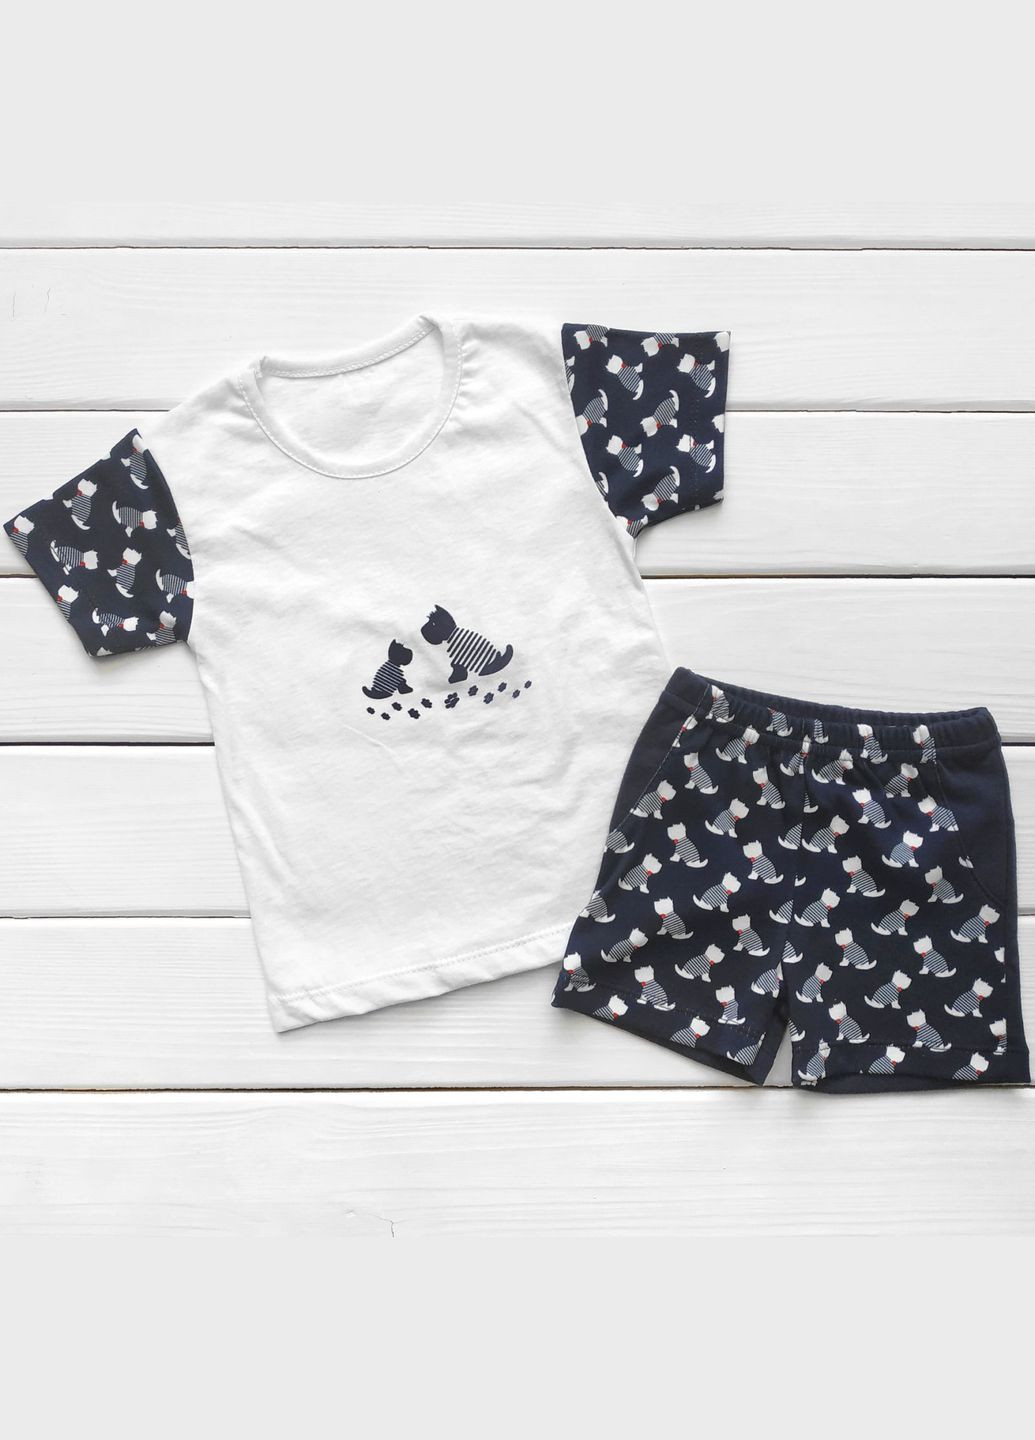 Комбинированный летний комплект для мальчика dog футболка и шорты синий;белый Malena